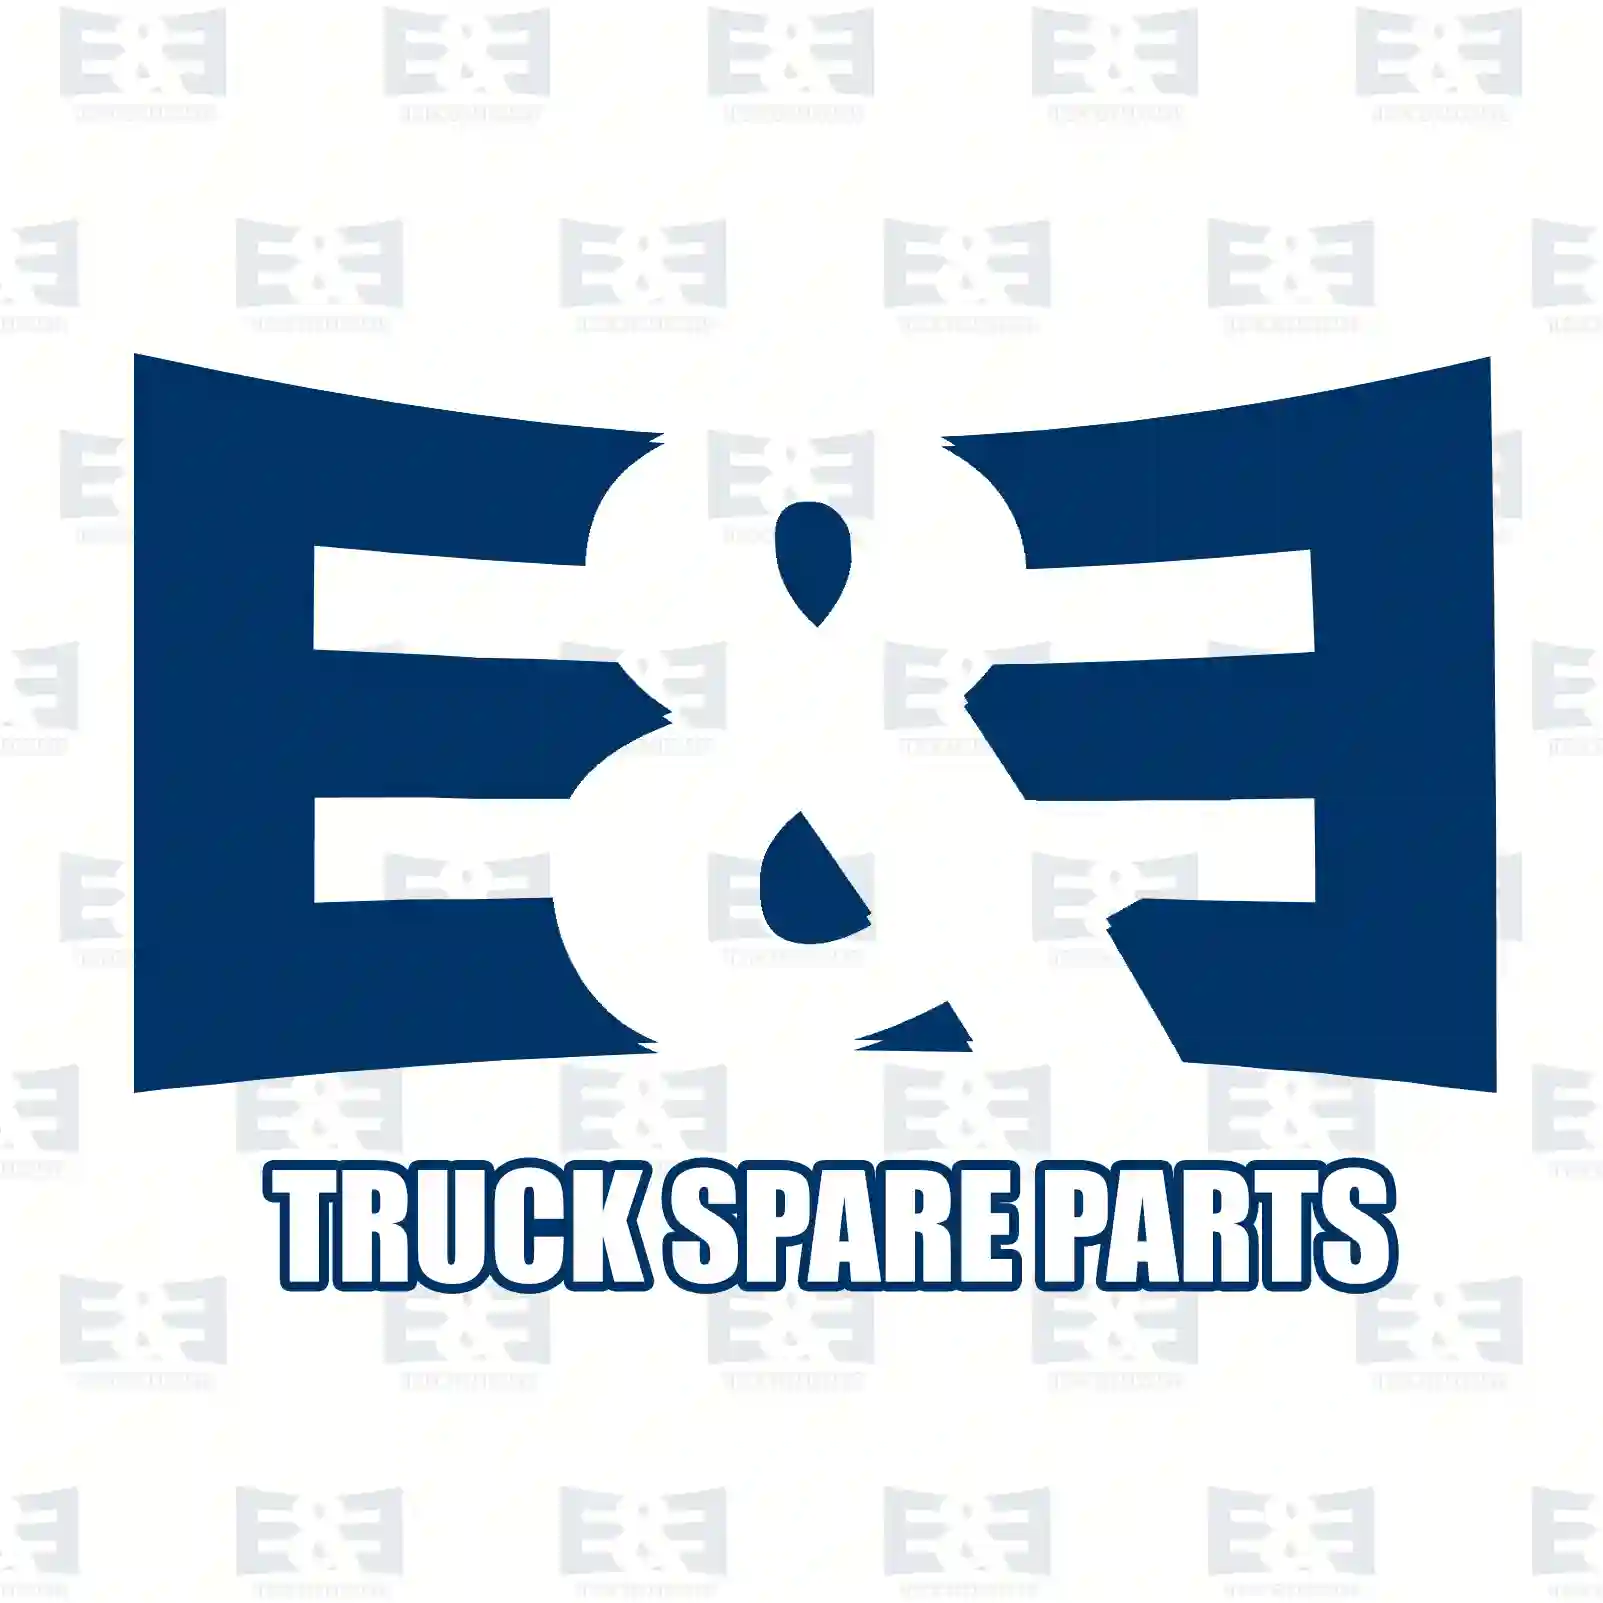 Bulb, 2E2290629, 0556536, 1354895, 556536, 42096249, 81259010073, 5003097060, 7400967709, 219193, 281810, 943498, 967709, 992519, 2V5947171A, ZG20299-0008 ||  2E2290629 E&E Truck Spare Parts | Truck Spare Parts, Auotomotive Spare Parts Bulb, 2E2290629, 0556536, 1354895, 556536, 42096249, 81259010073, 5003097060, 7400967709, 219193, 281810, 943498, 967709, 992519, 2V5947171A, ZG20299-0008 ||  2E2290629 E&E Truck Spare Parts | Truck Spare Parts, Auotomotive Spare Parts